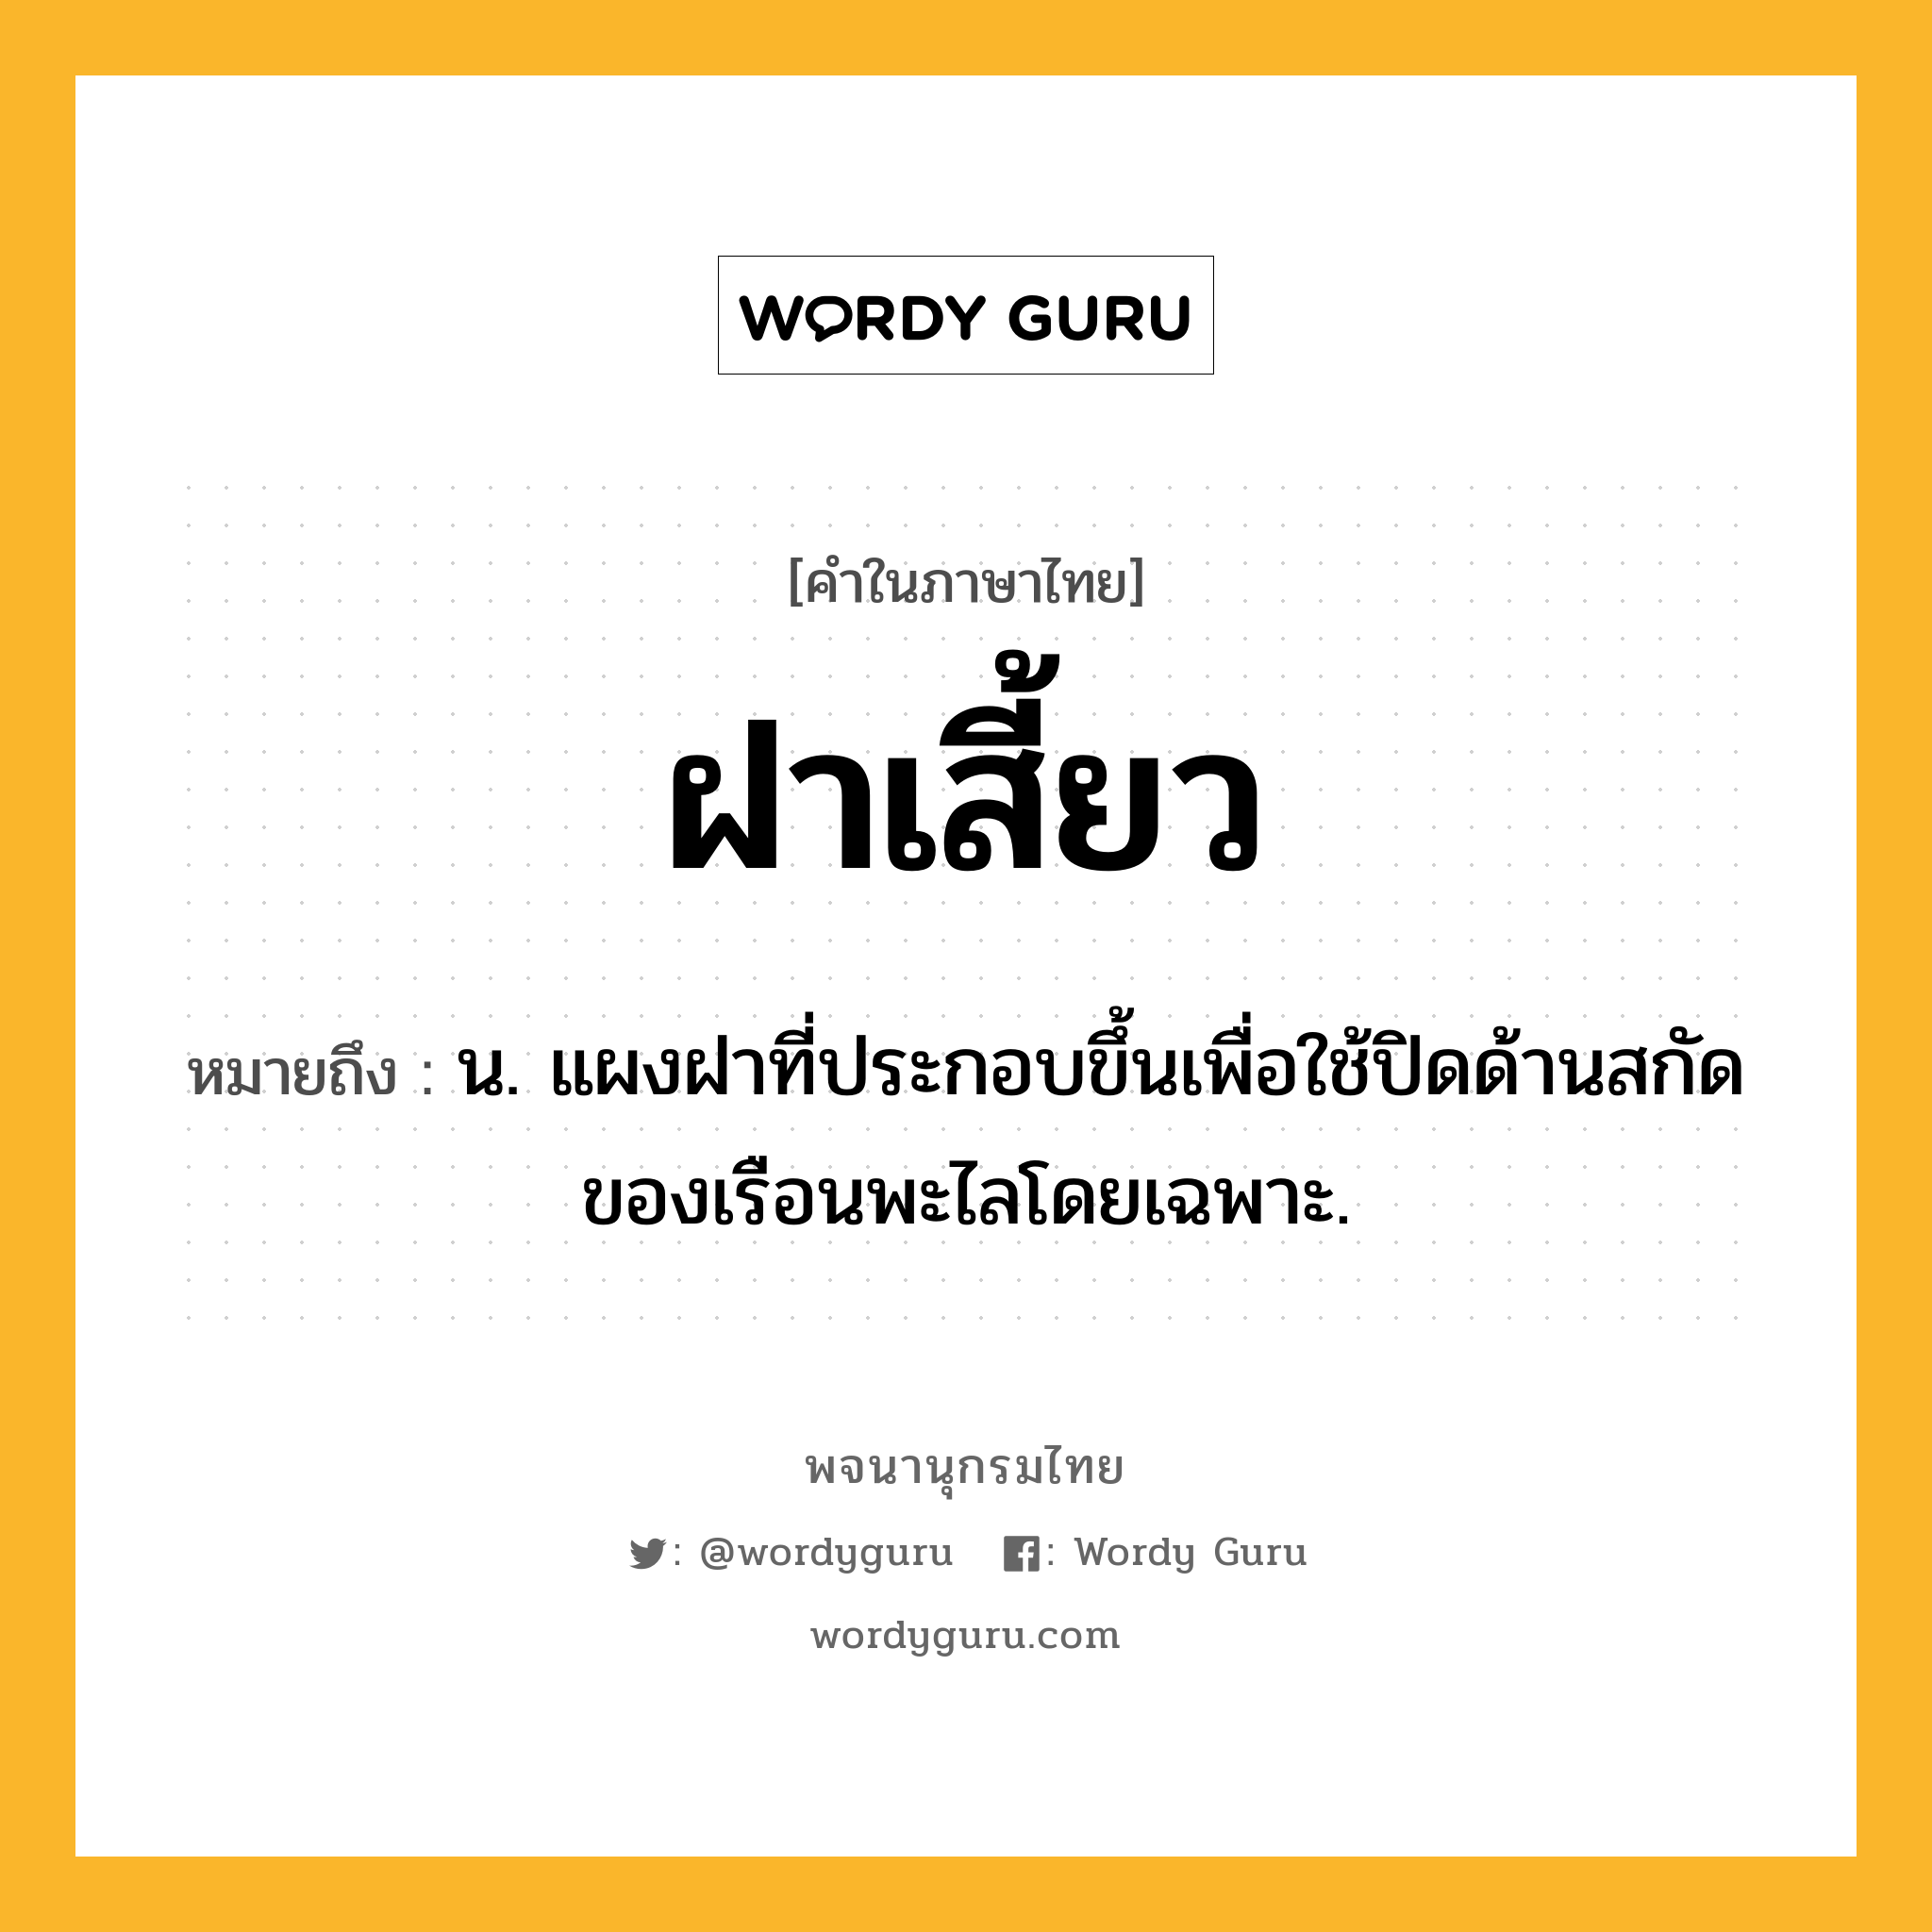 ฝาเสี้ยว ความหมาย หมายถึงอะไร?, คำในภาษาไทย ฝาเสี้ยว หมายถึง น. แผงฝาที่ประกอบขึ้นเพื่อใช้ปิดด้านสกัดของเรือนพะไลโดยเฉพาะ.